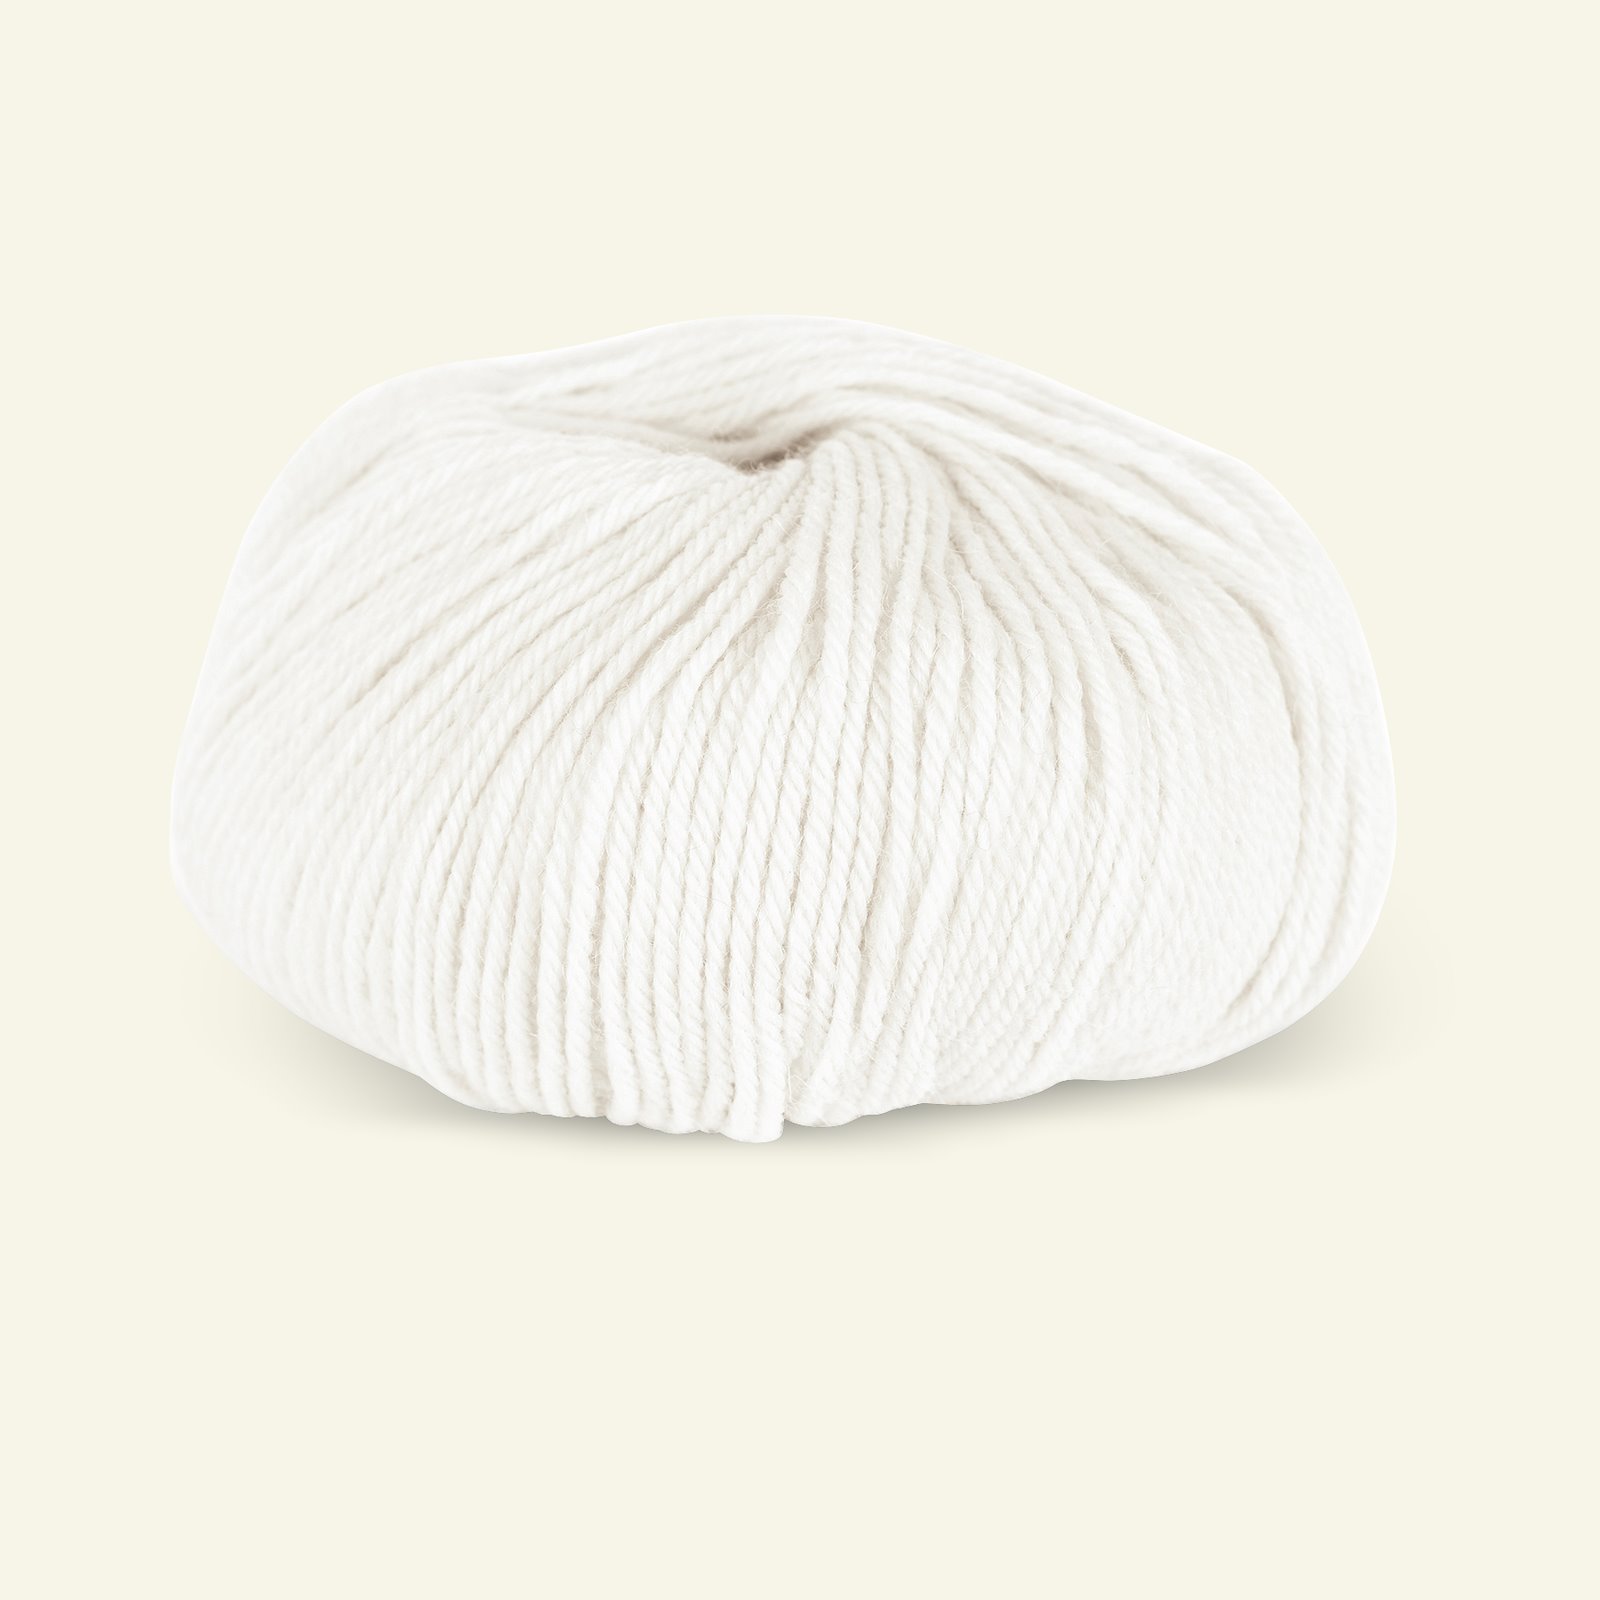 Du Store Alpakka, alpaca merino mixed yarn "Sterk", offwhite (806) 90000656_pack_b